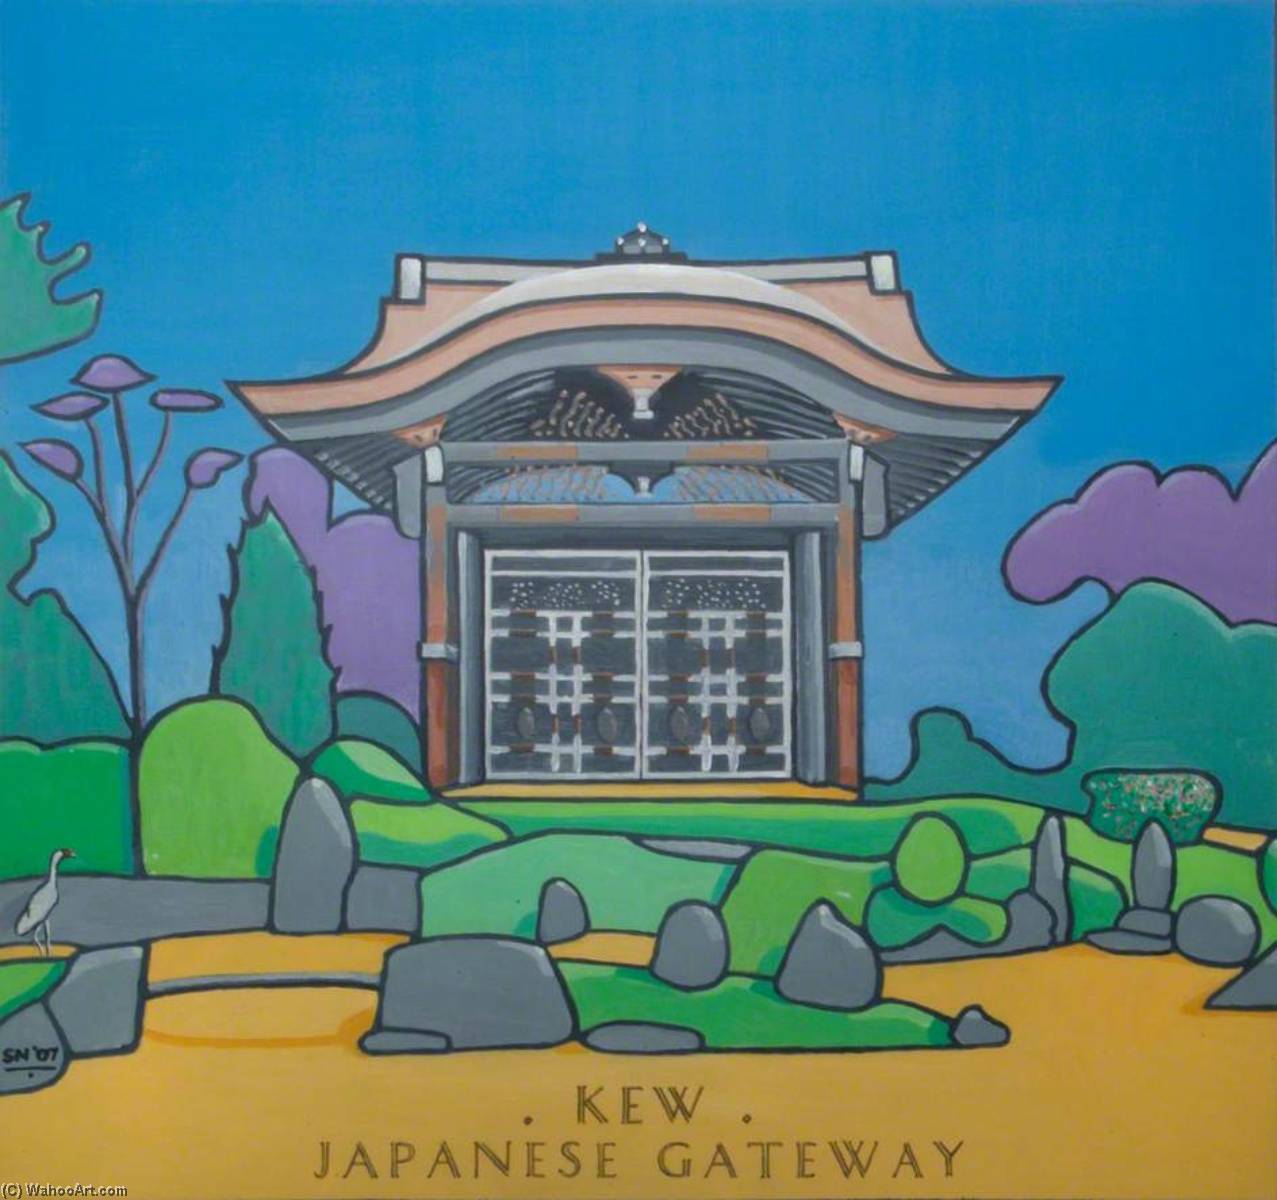 Wikioo.org - Bách khoa toàn thư về mỹ thuật - Vẽ tranh, Tác phẩm nghệ thuật Stephen Nicoll - Kew Icons Japanese Gateway